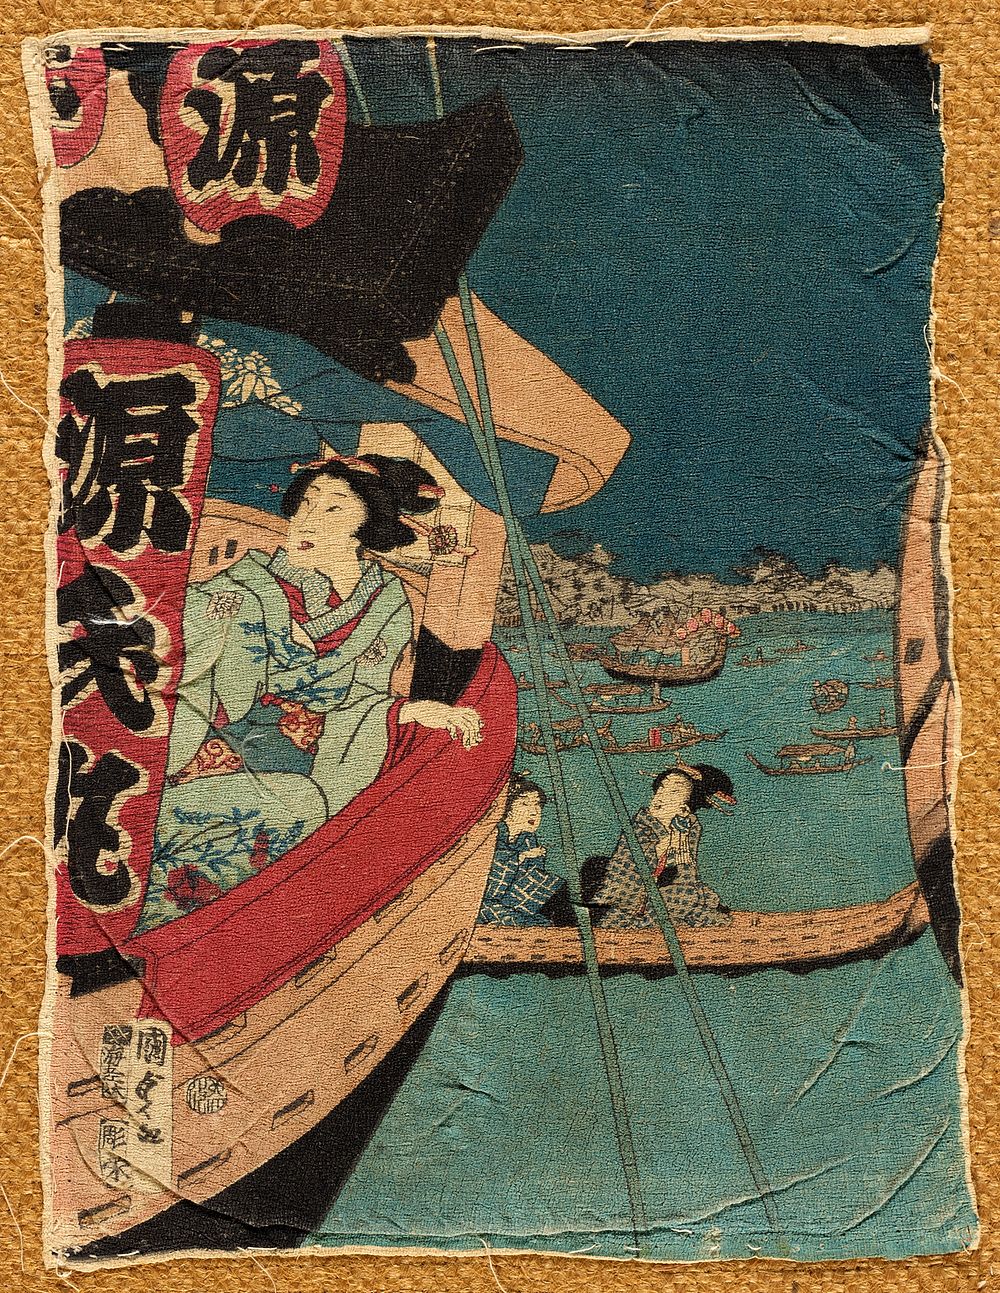 Boating on the Sumida River by Utagawa Kunisada II